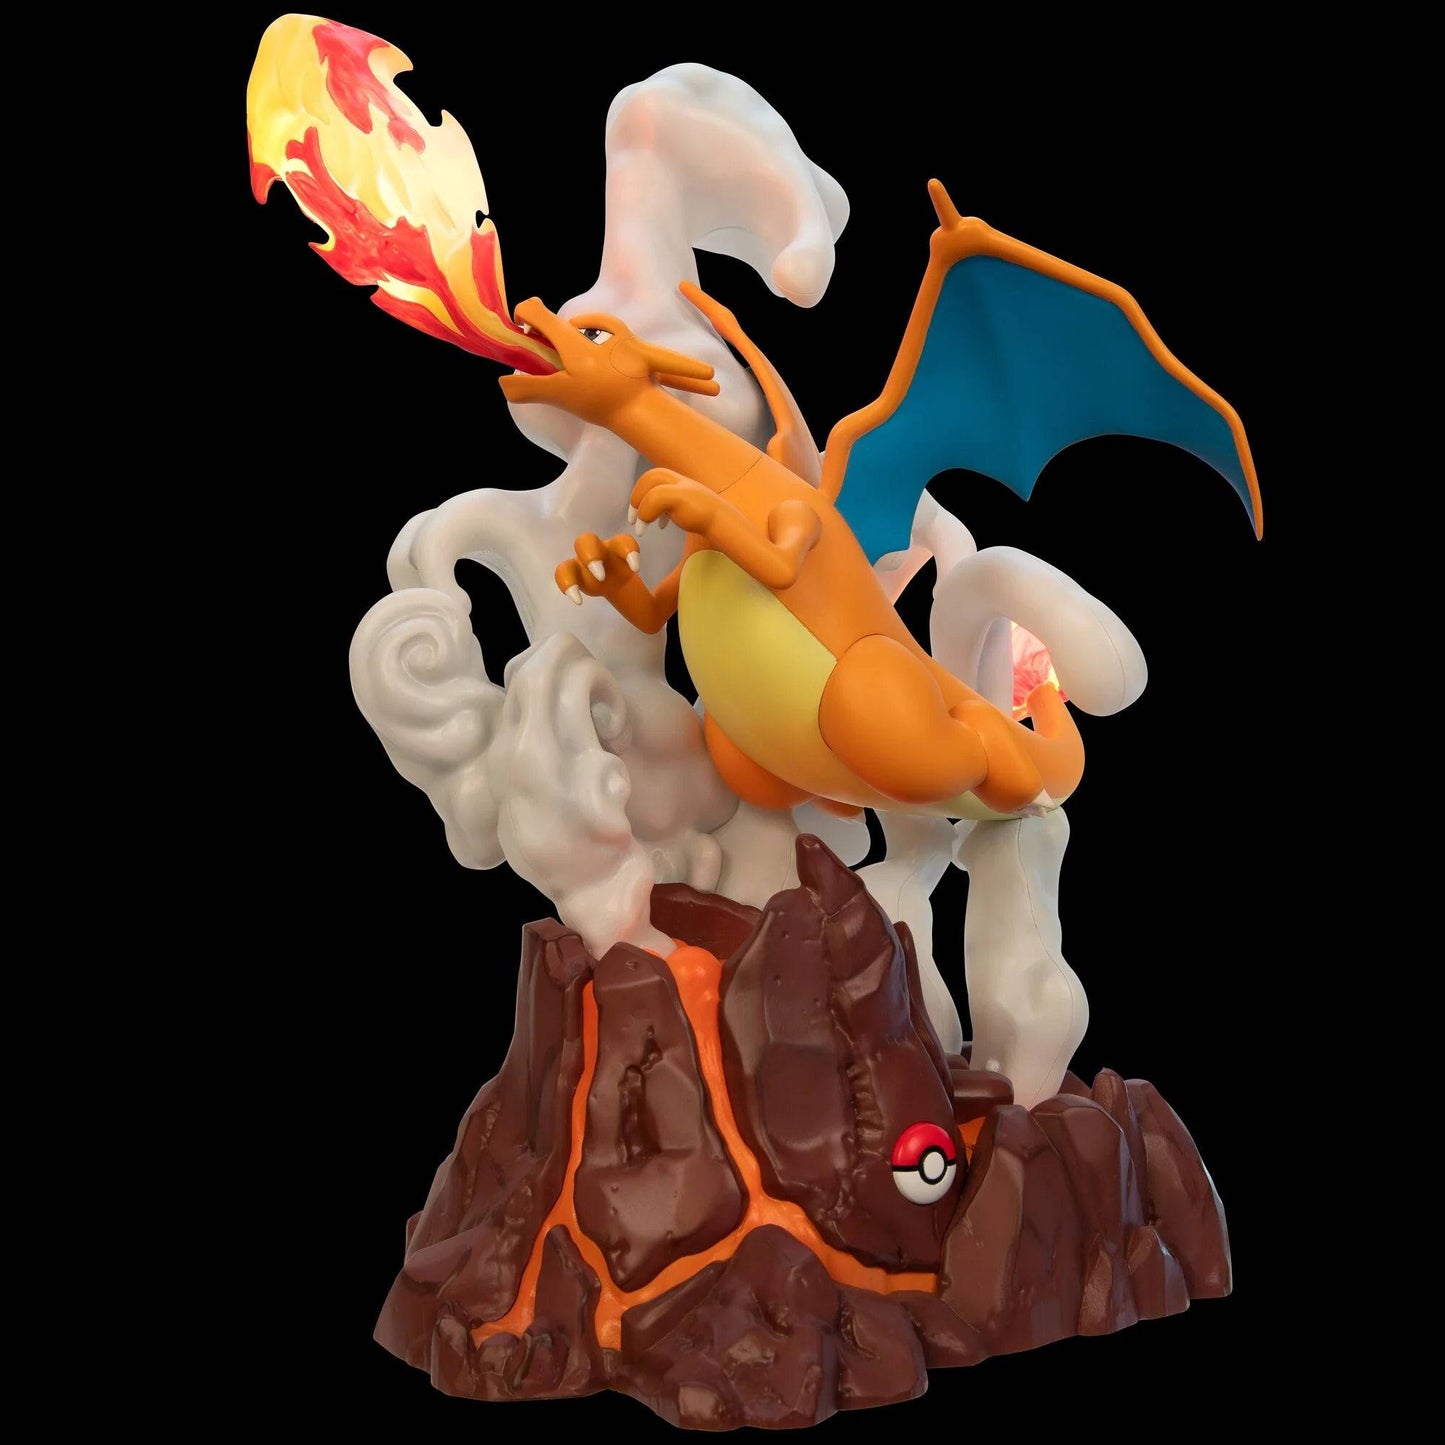 Pokemon Select Deluxe Collector Figures: Charizard 13 Pulgadas Estatua